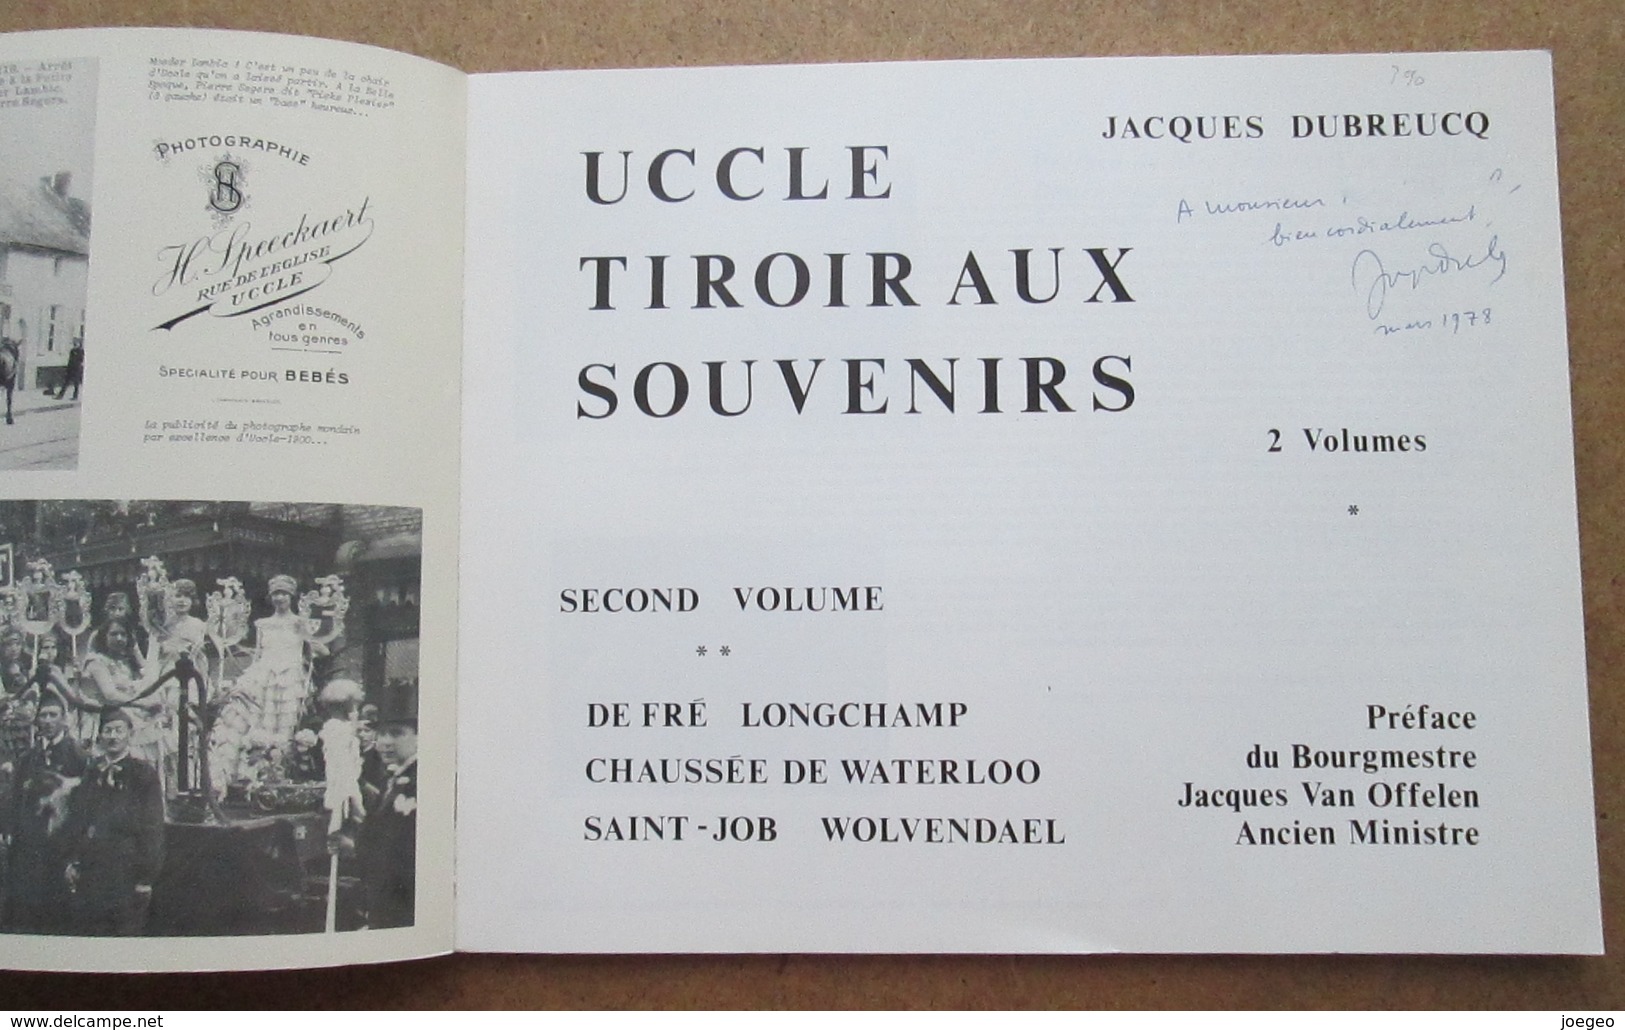 Uccle - tiroirs aux souvenirs - Jacques Dubreucq - 2 volumes / Cartes Postales - Photographies - peintures - Journaux